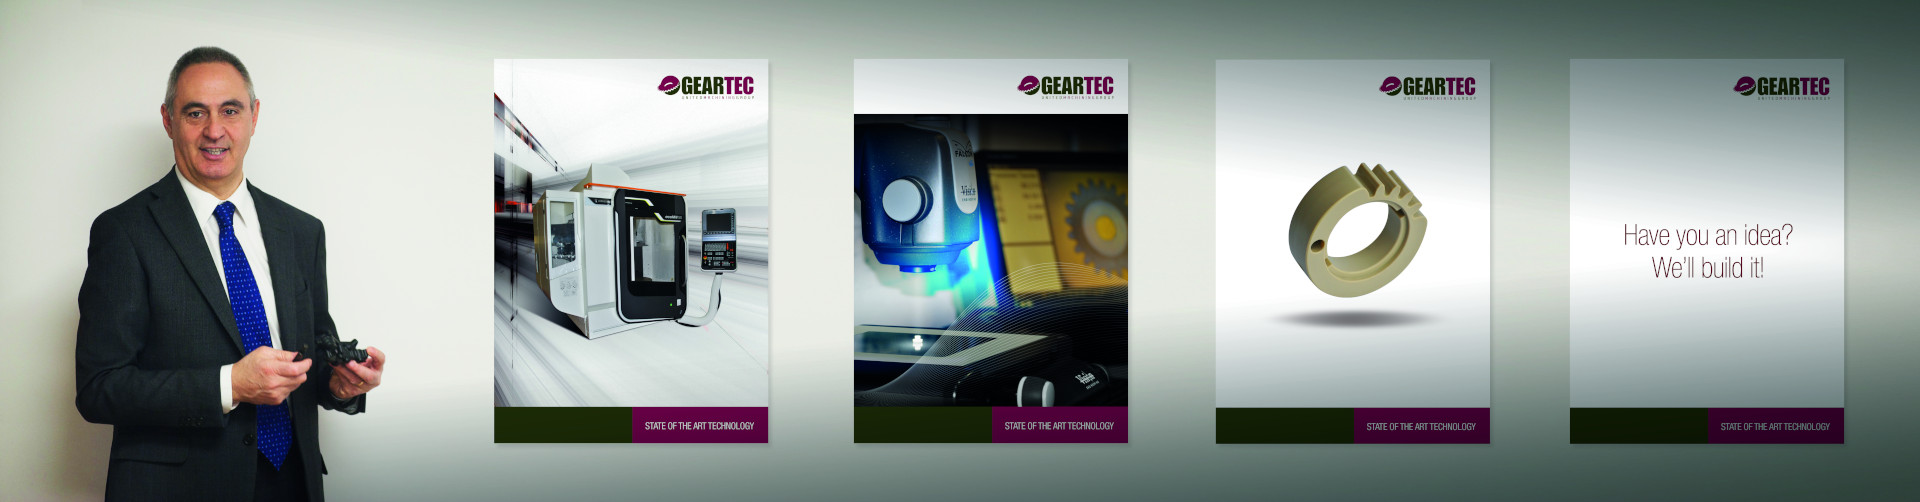 Geartec è specializzata in microlavorazioni e nella realizzazione di particolari in materiali polimerici a elevata precisione.